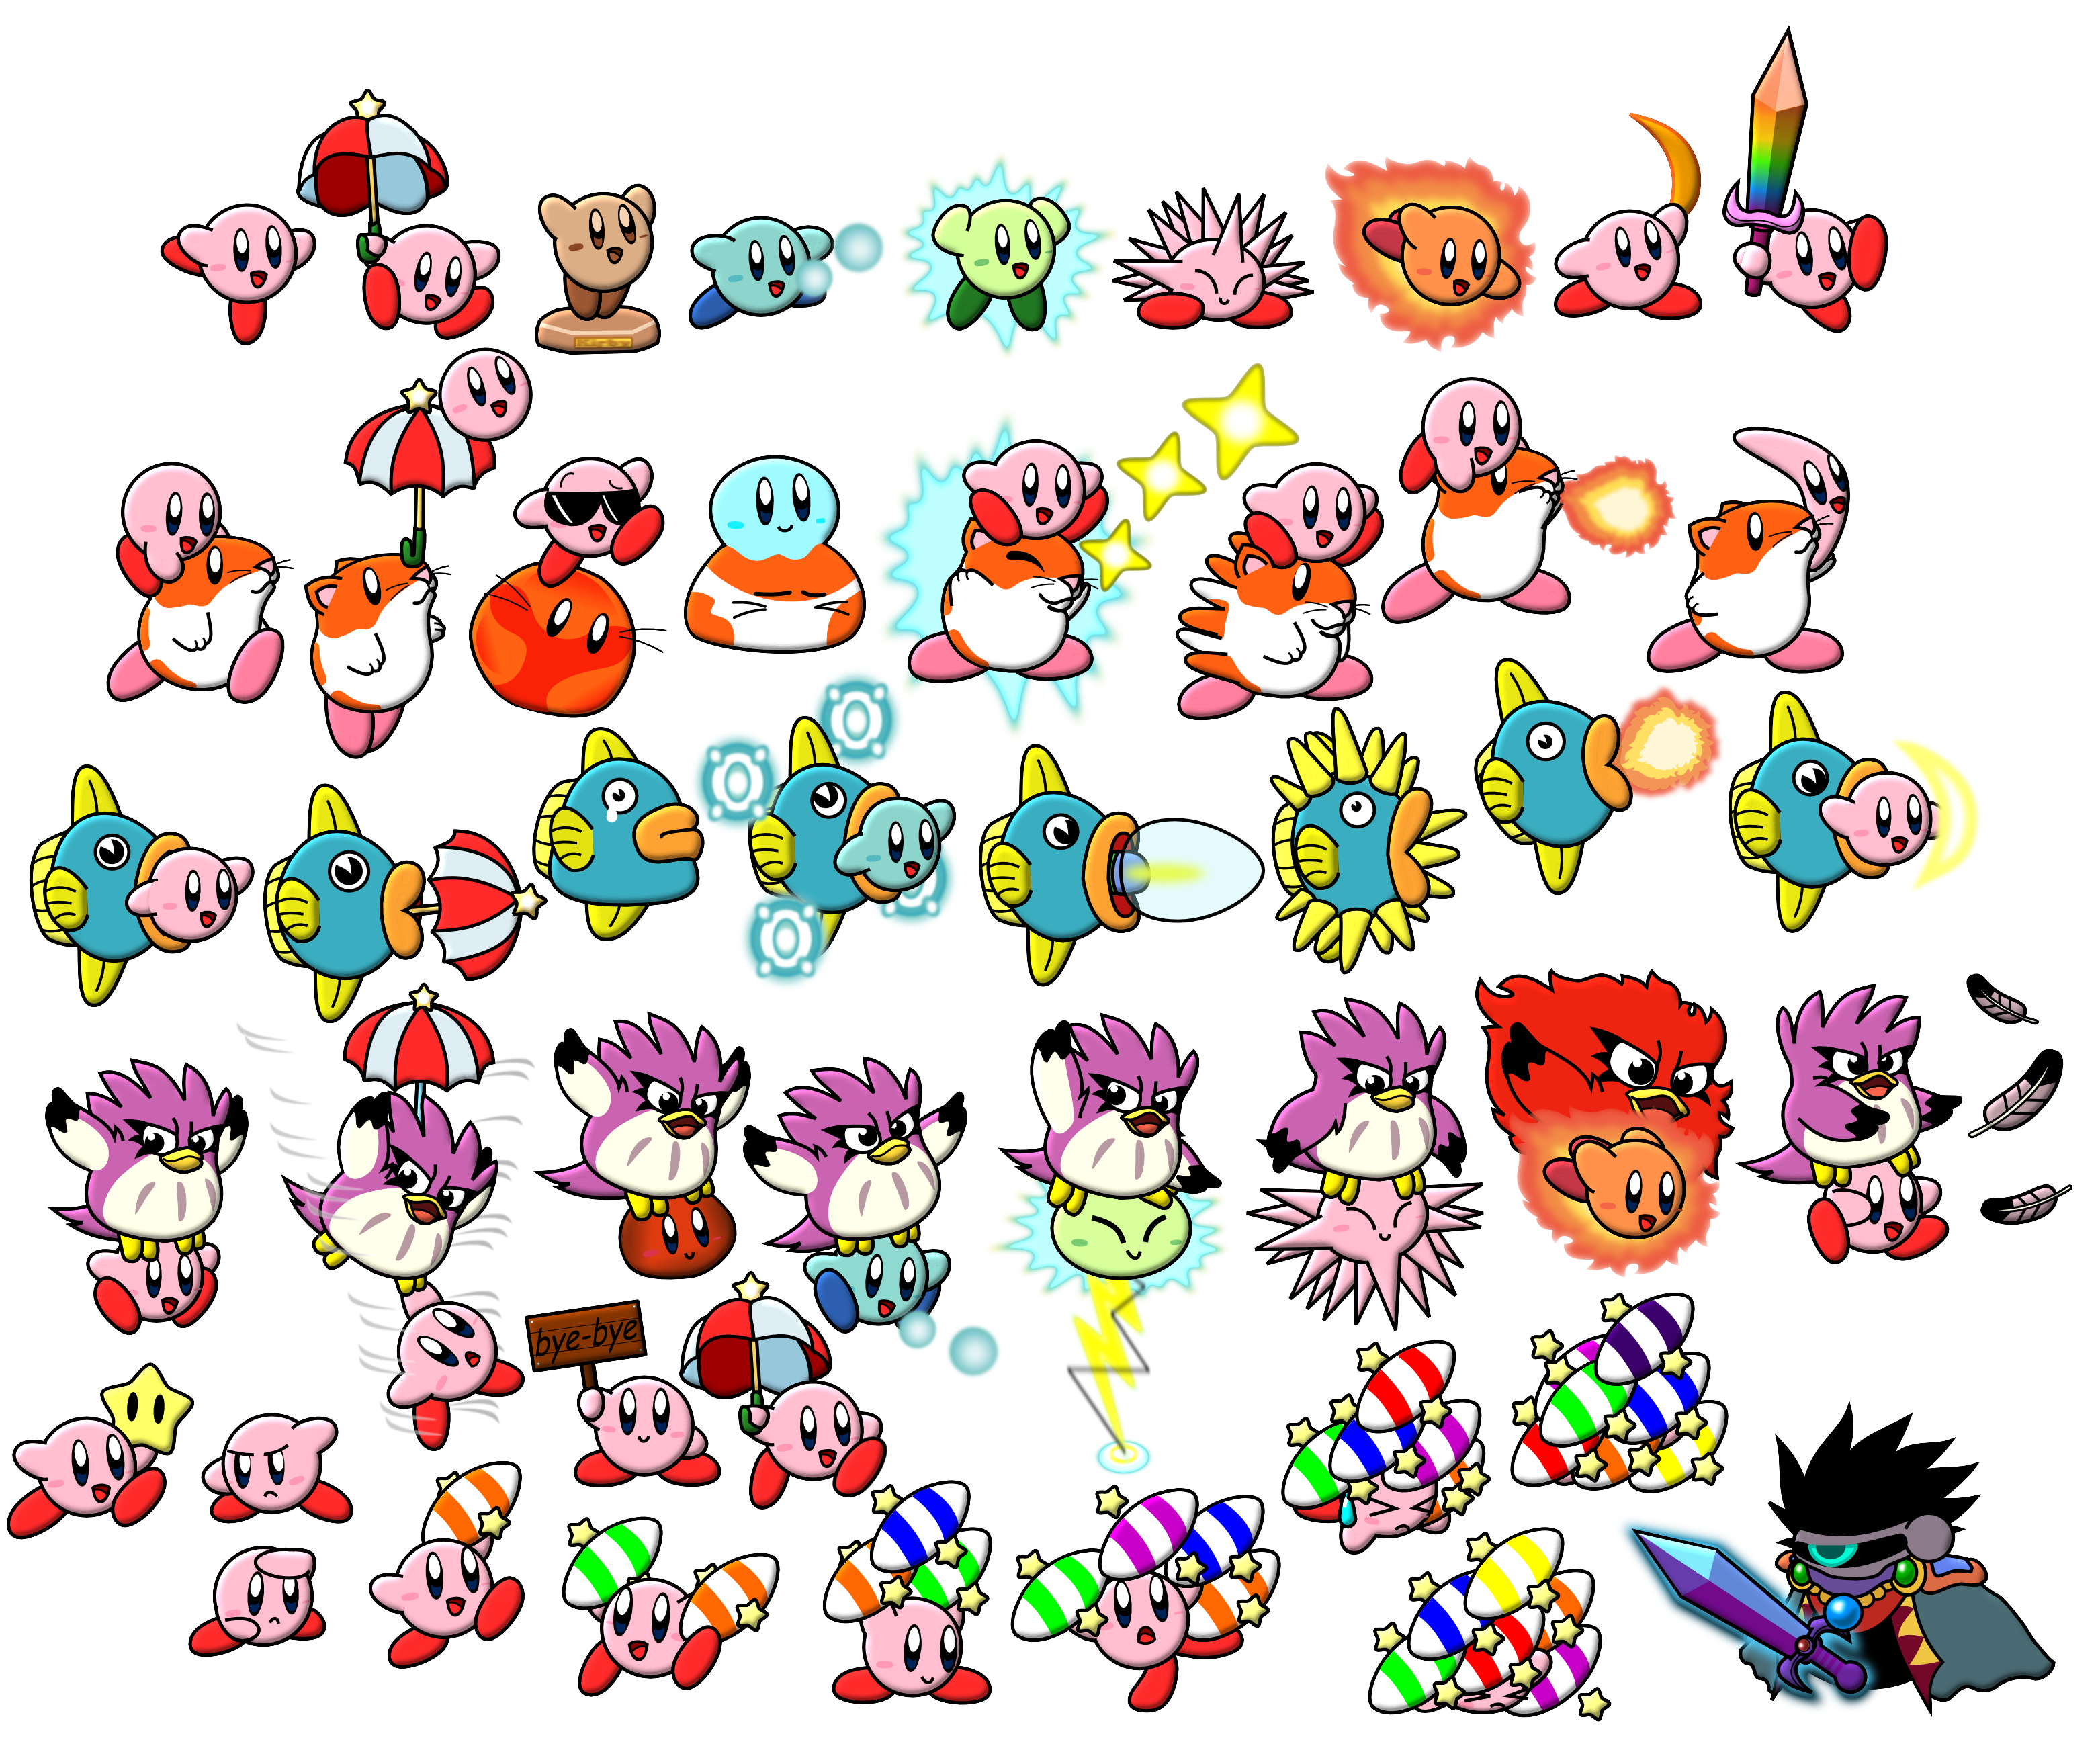 Kirby's Dreamland 2